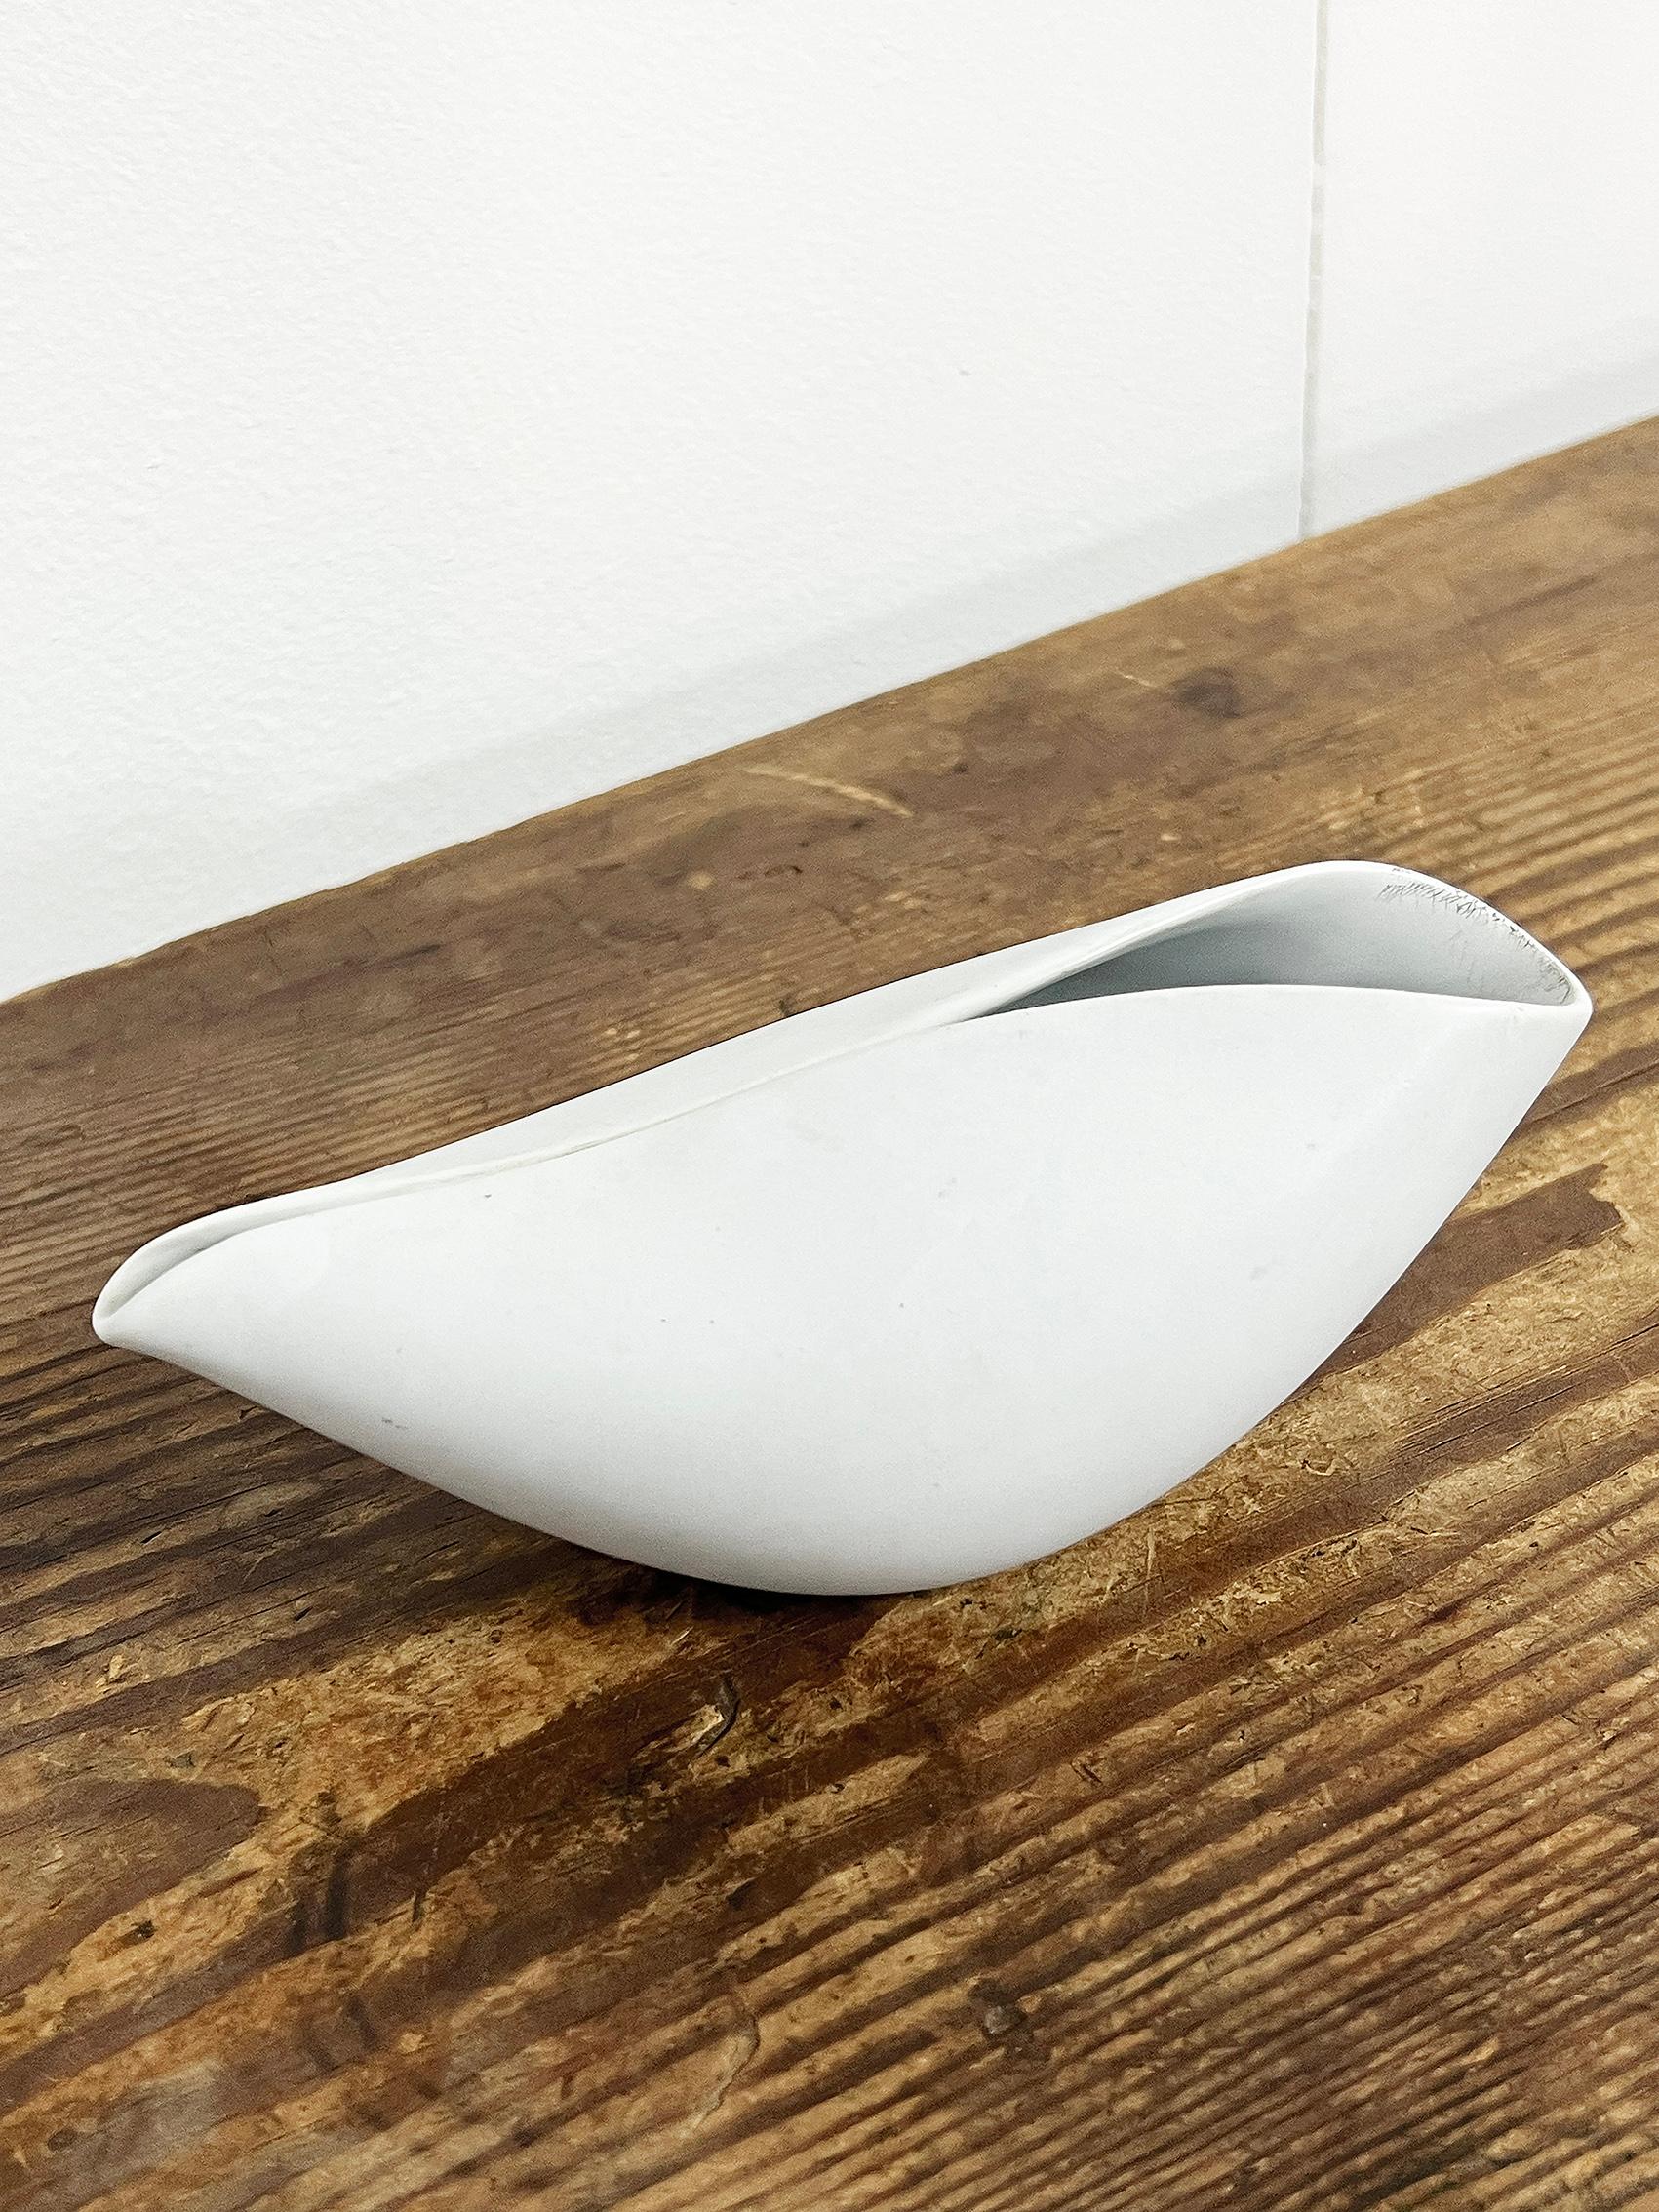 Scandinavian Modern “Veckla” Bowl by Stig Lindberg for Gustavsberg 1950's For Sale